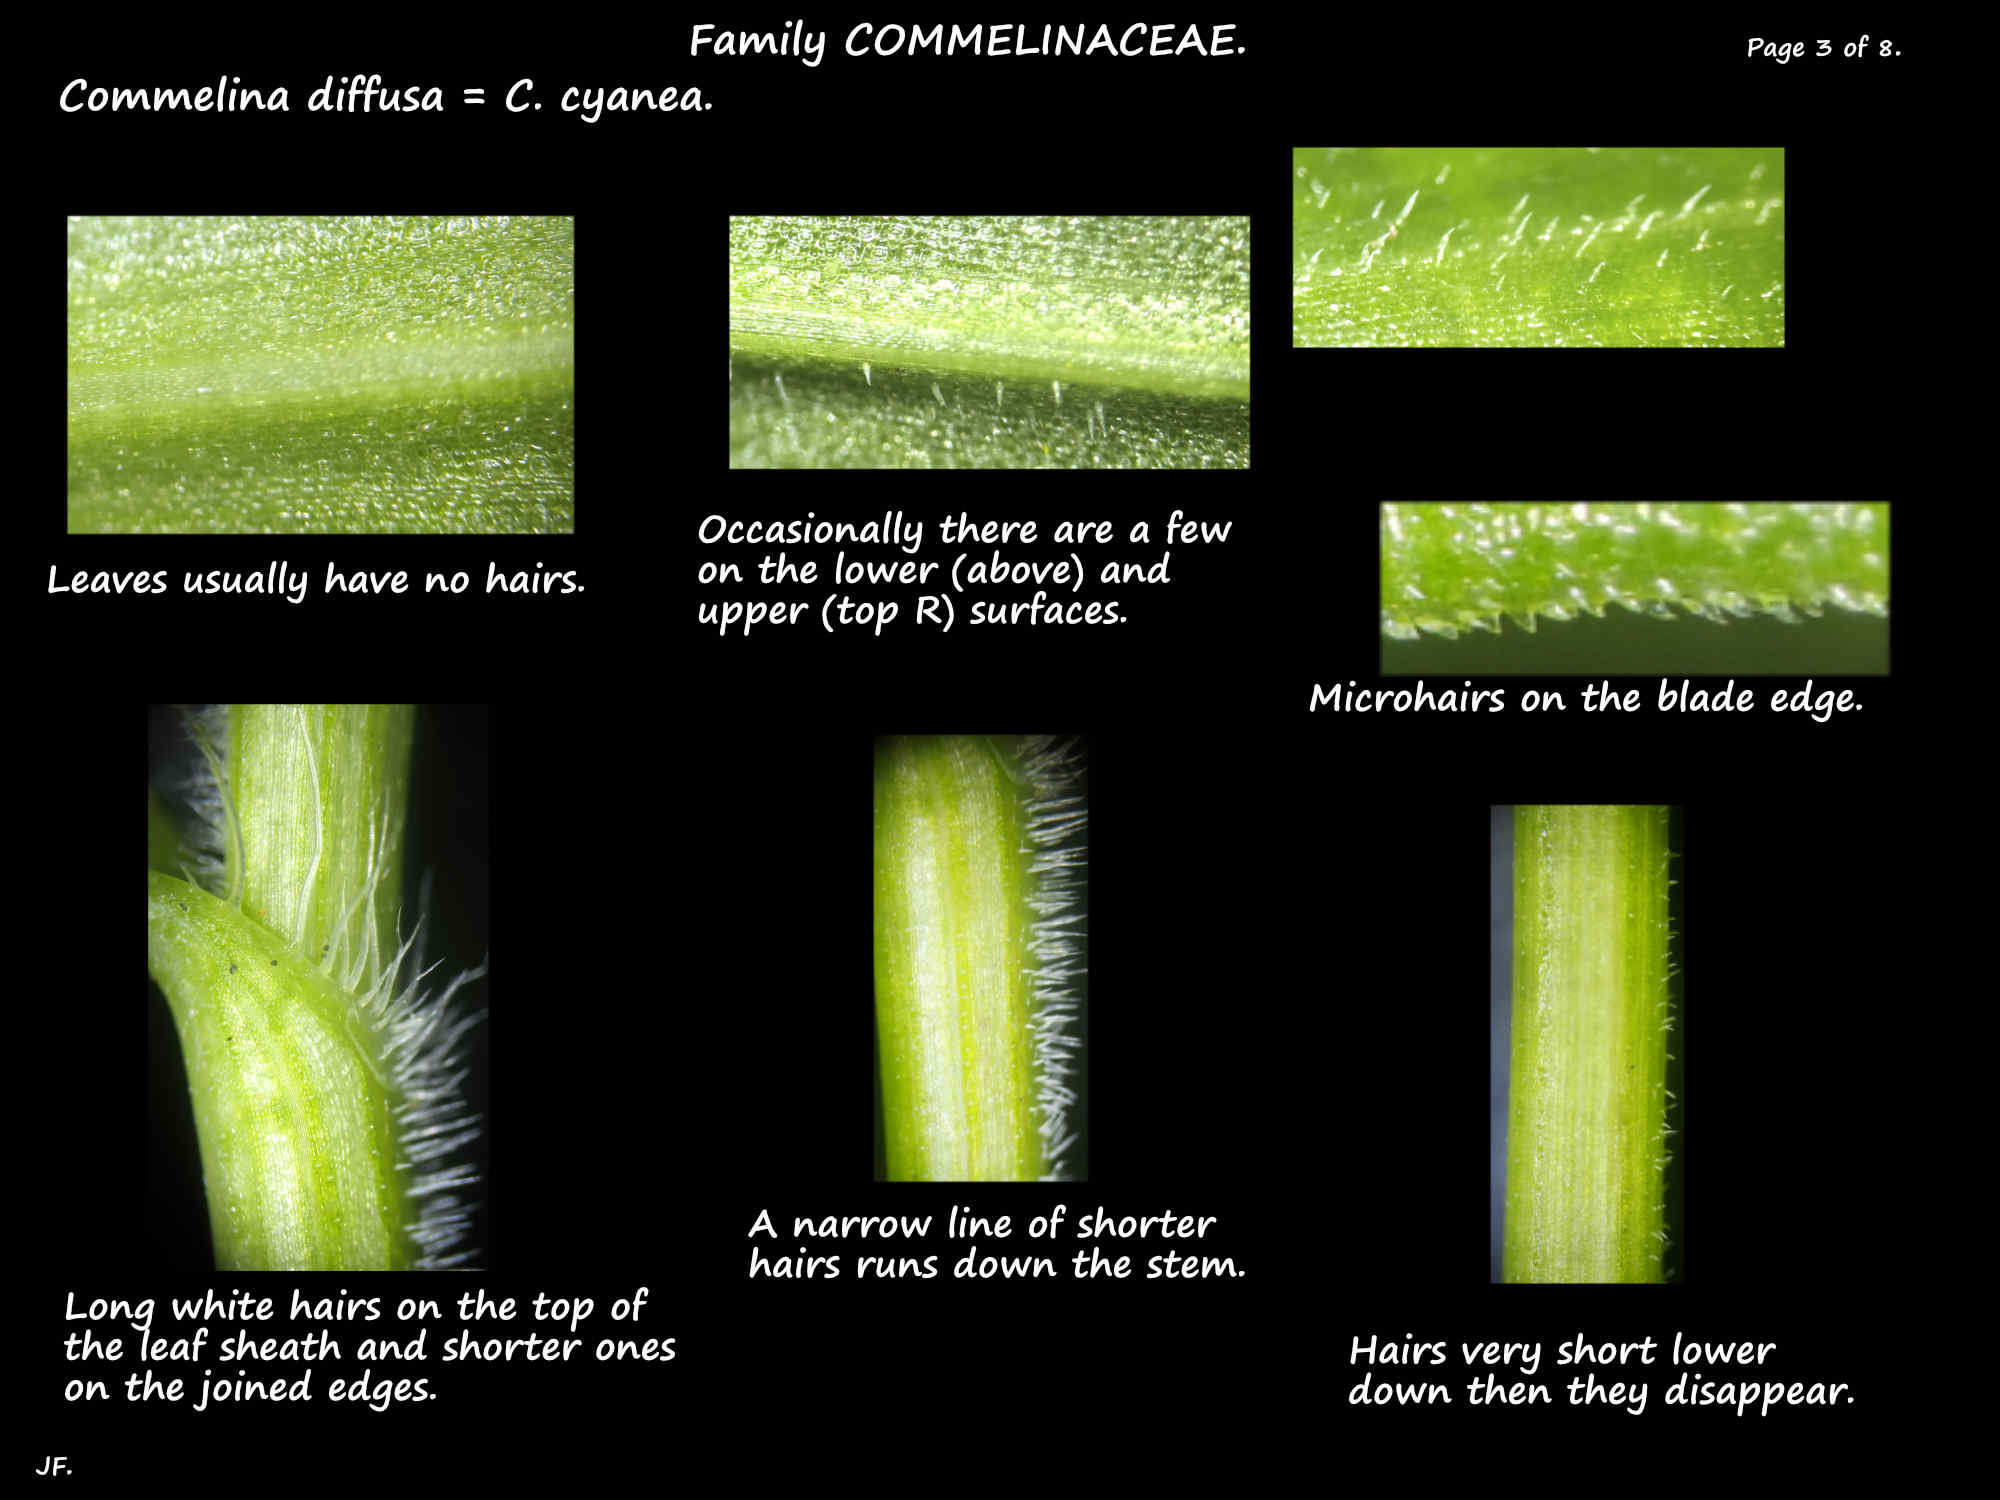 3 Commelina diffusa leaf hairs & the sheath